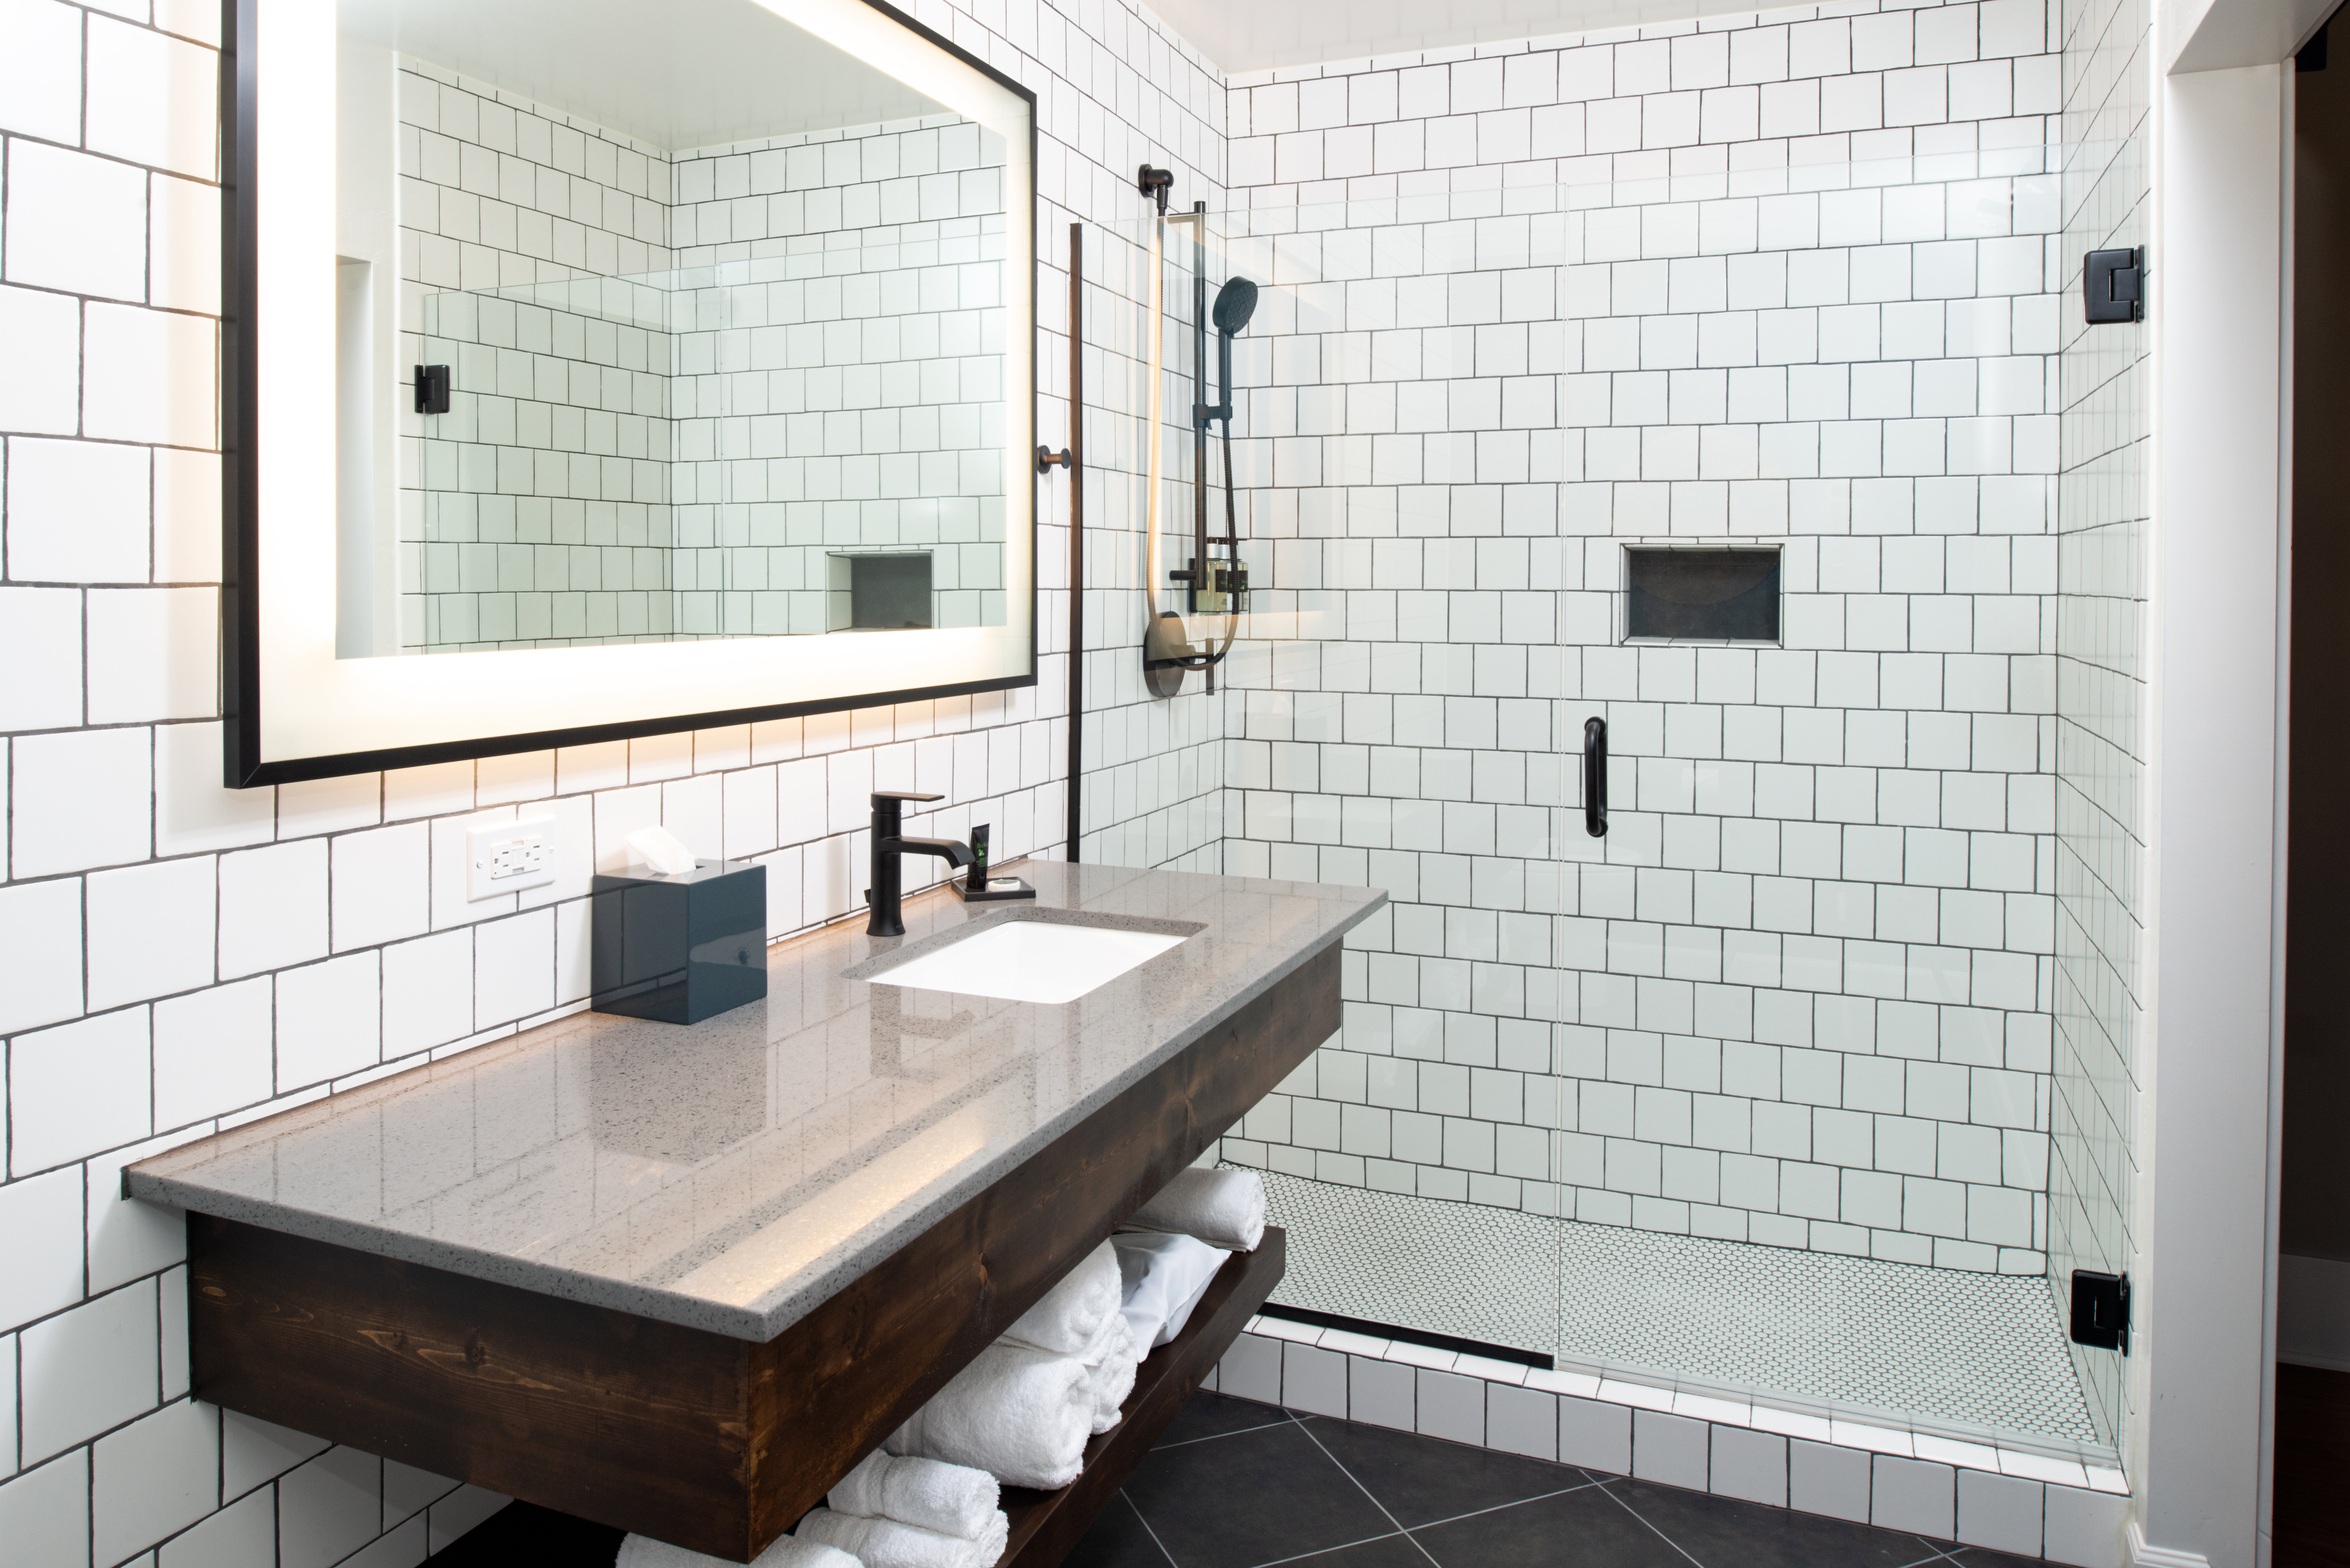 Hotel Indigo Spokane features spacious modern bathrooms. 